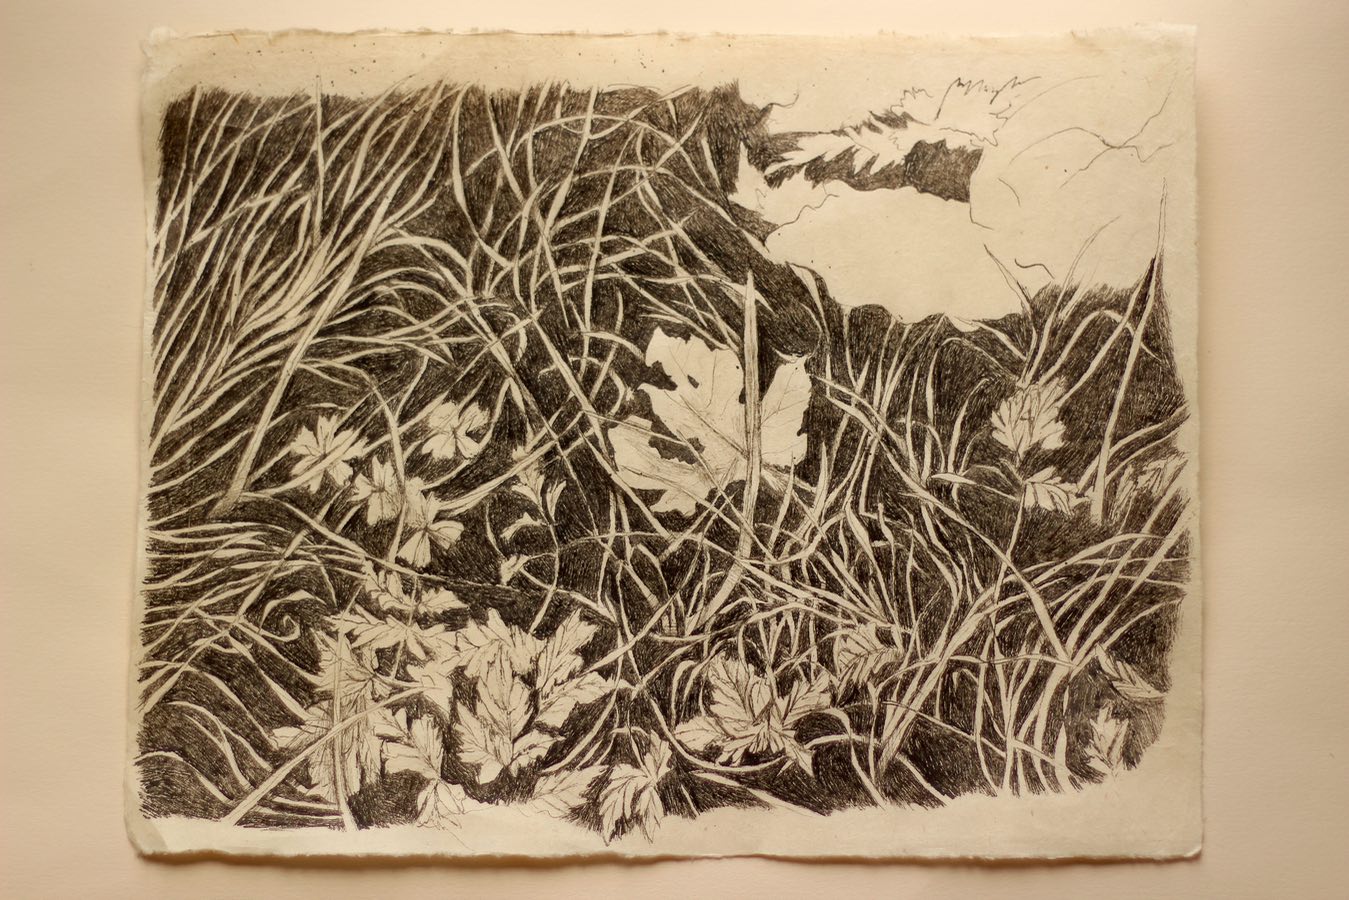 ‘Driveway, Leaf’, Indian ink on Lokta paper, 36x28cm, April 2021